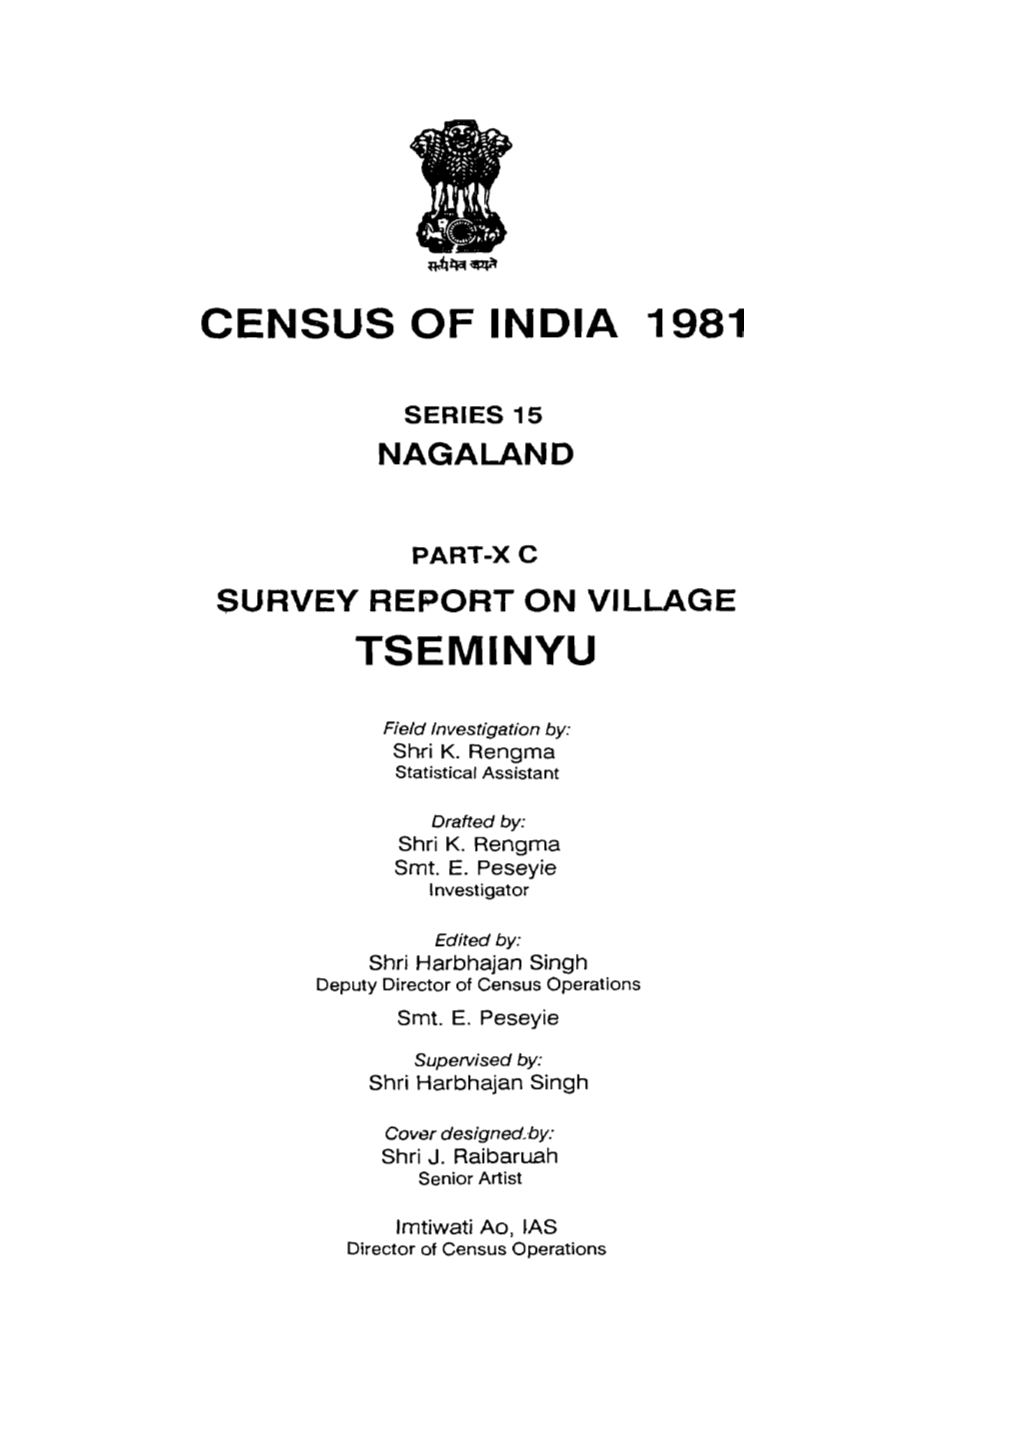 Survey Report on Village Tseminy, Part X-C, Series-15, Nagaland